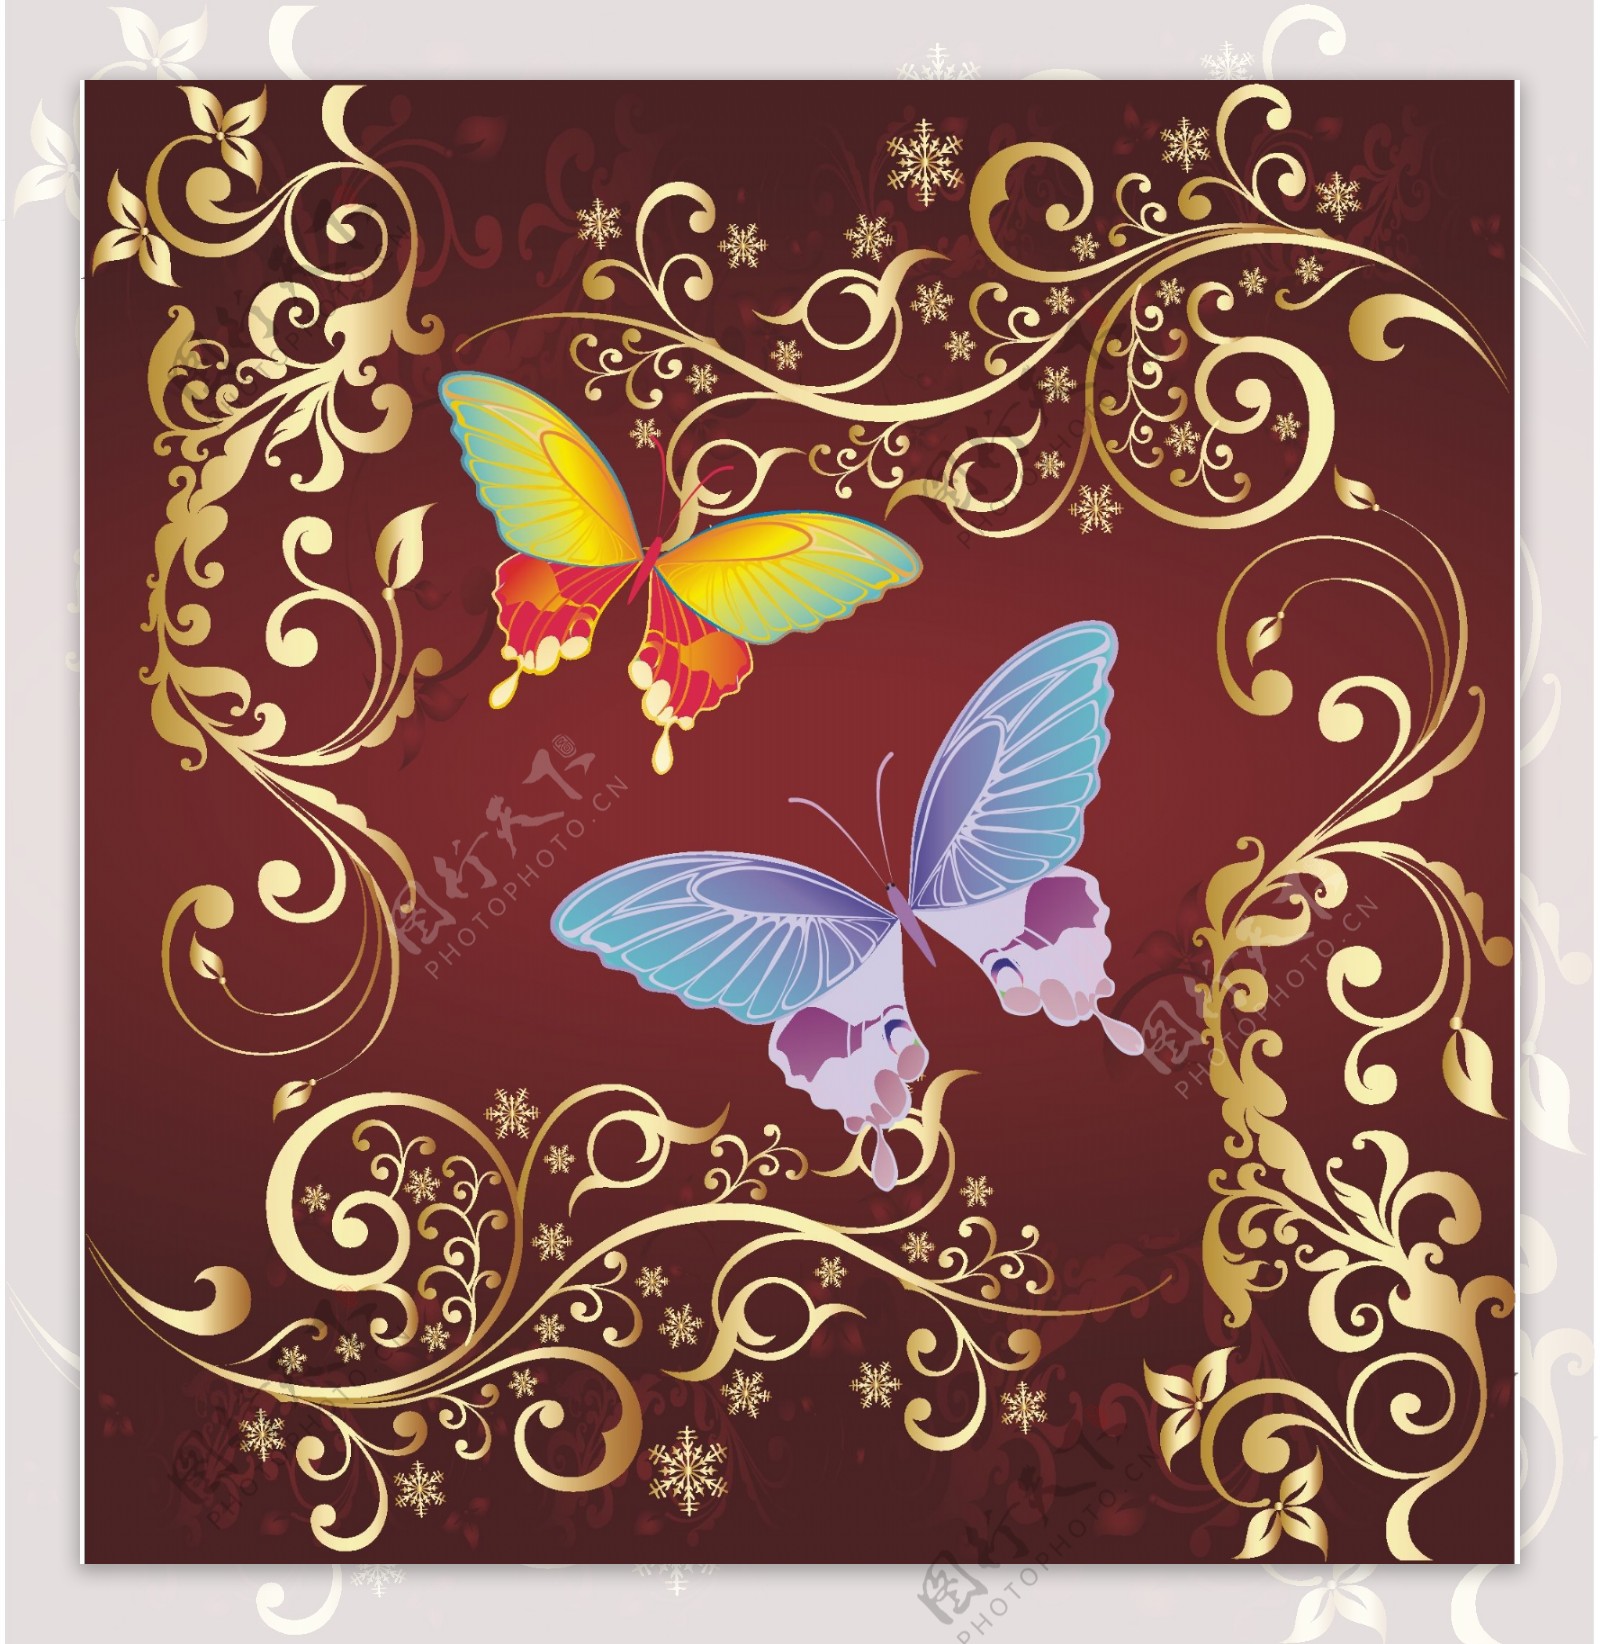 时尚华丽的图案和色彩的蝴蝶背景矢量素材